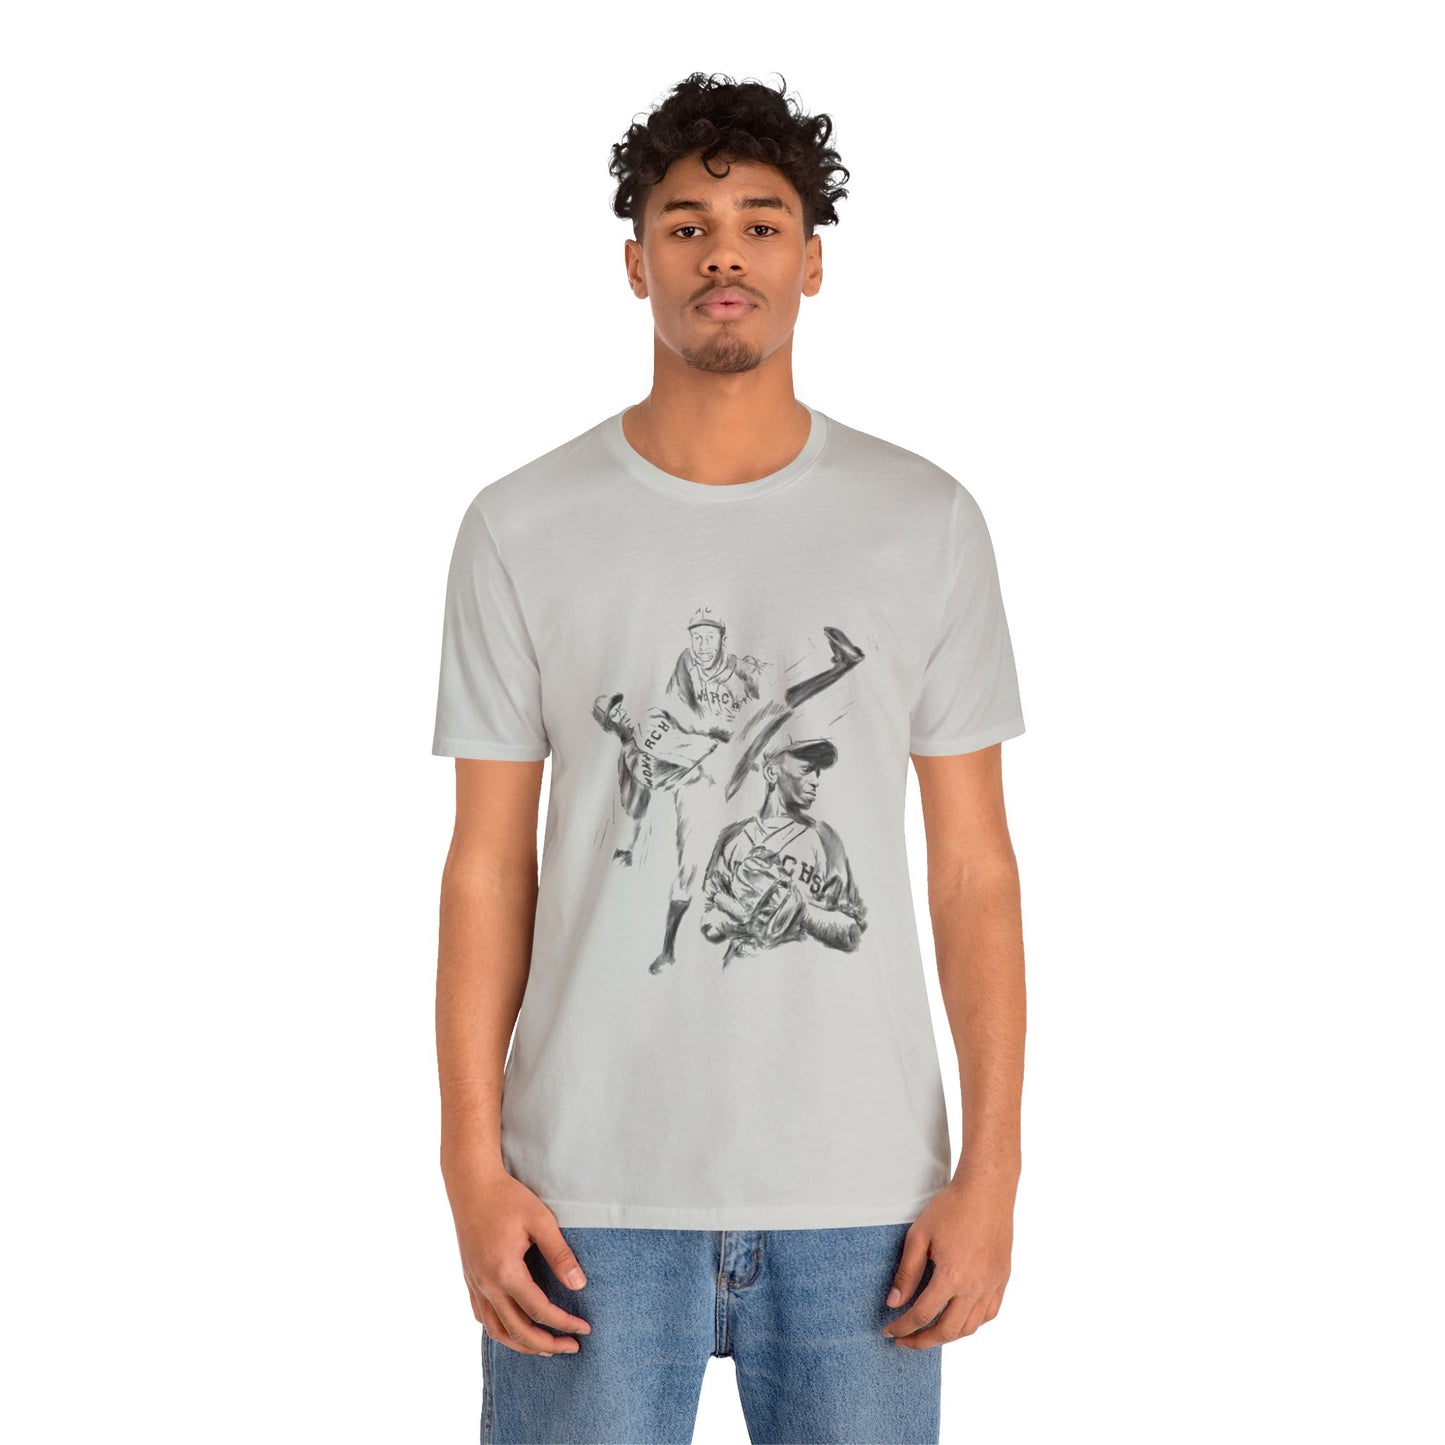 Satchel Paige |  Sketch | Unisex T-Shirt